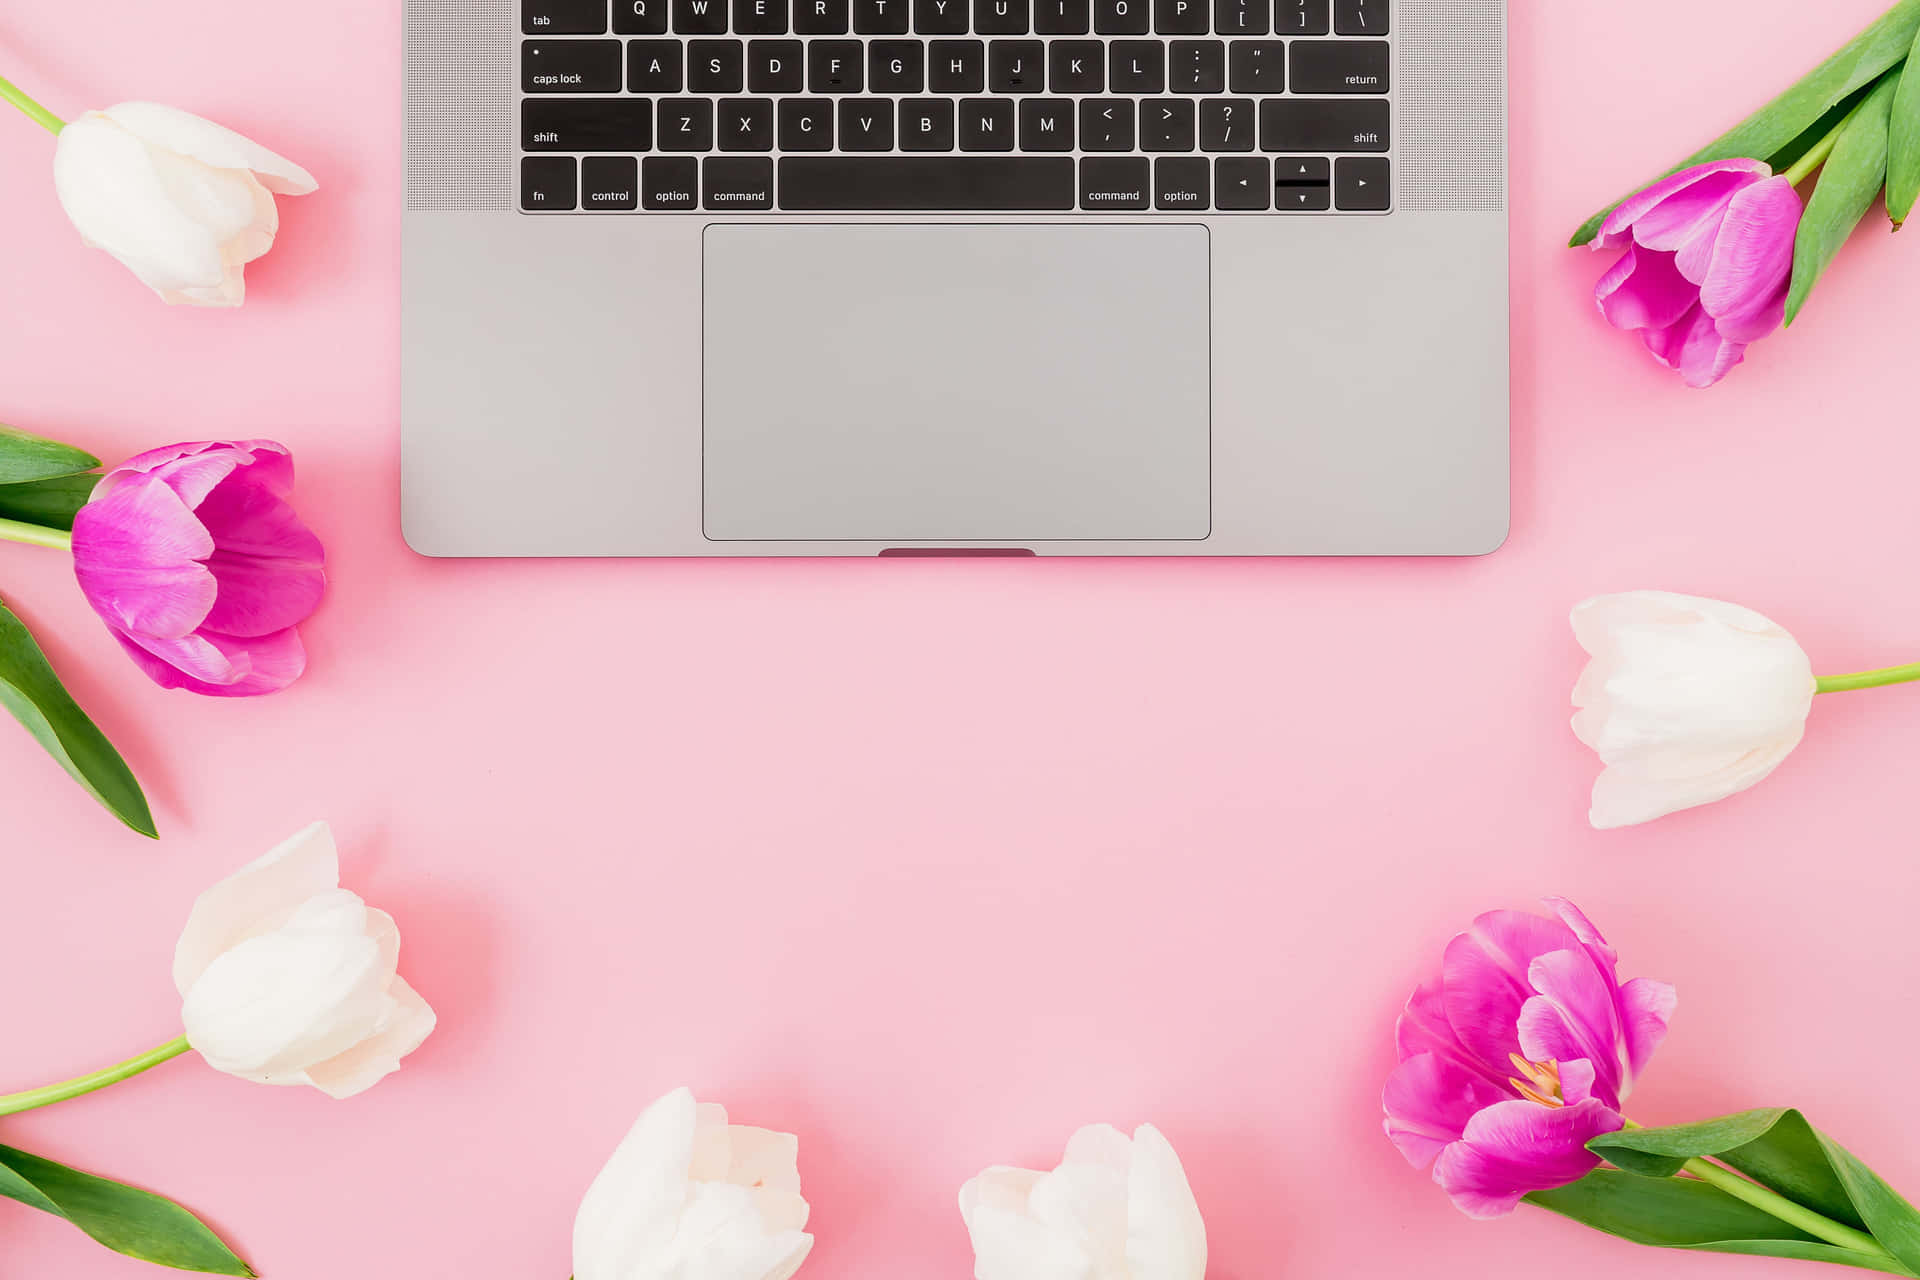 Einlaptop Computer Mit Pinken Tulpen Auf Einem Pinken Hintergrund. Wallpaper